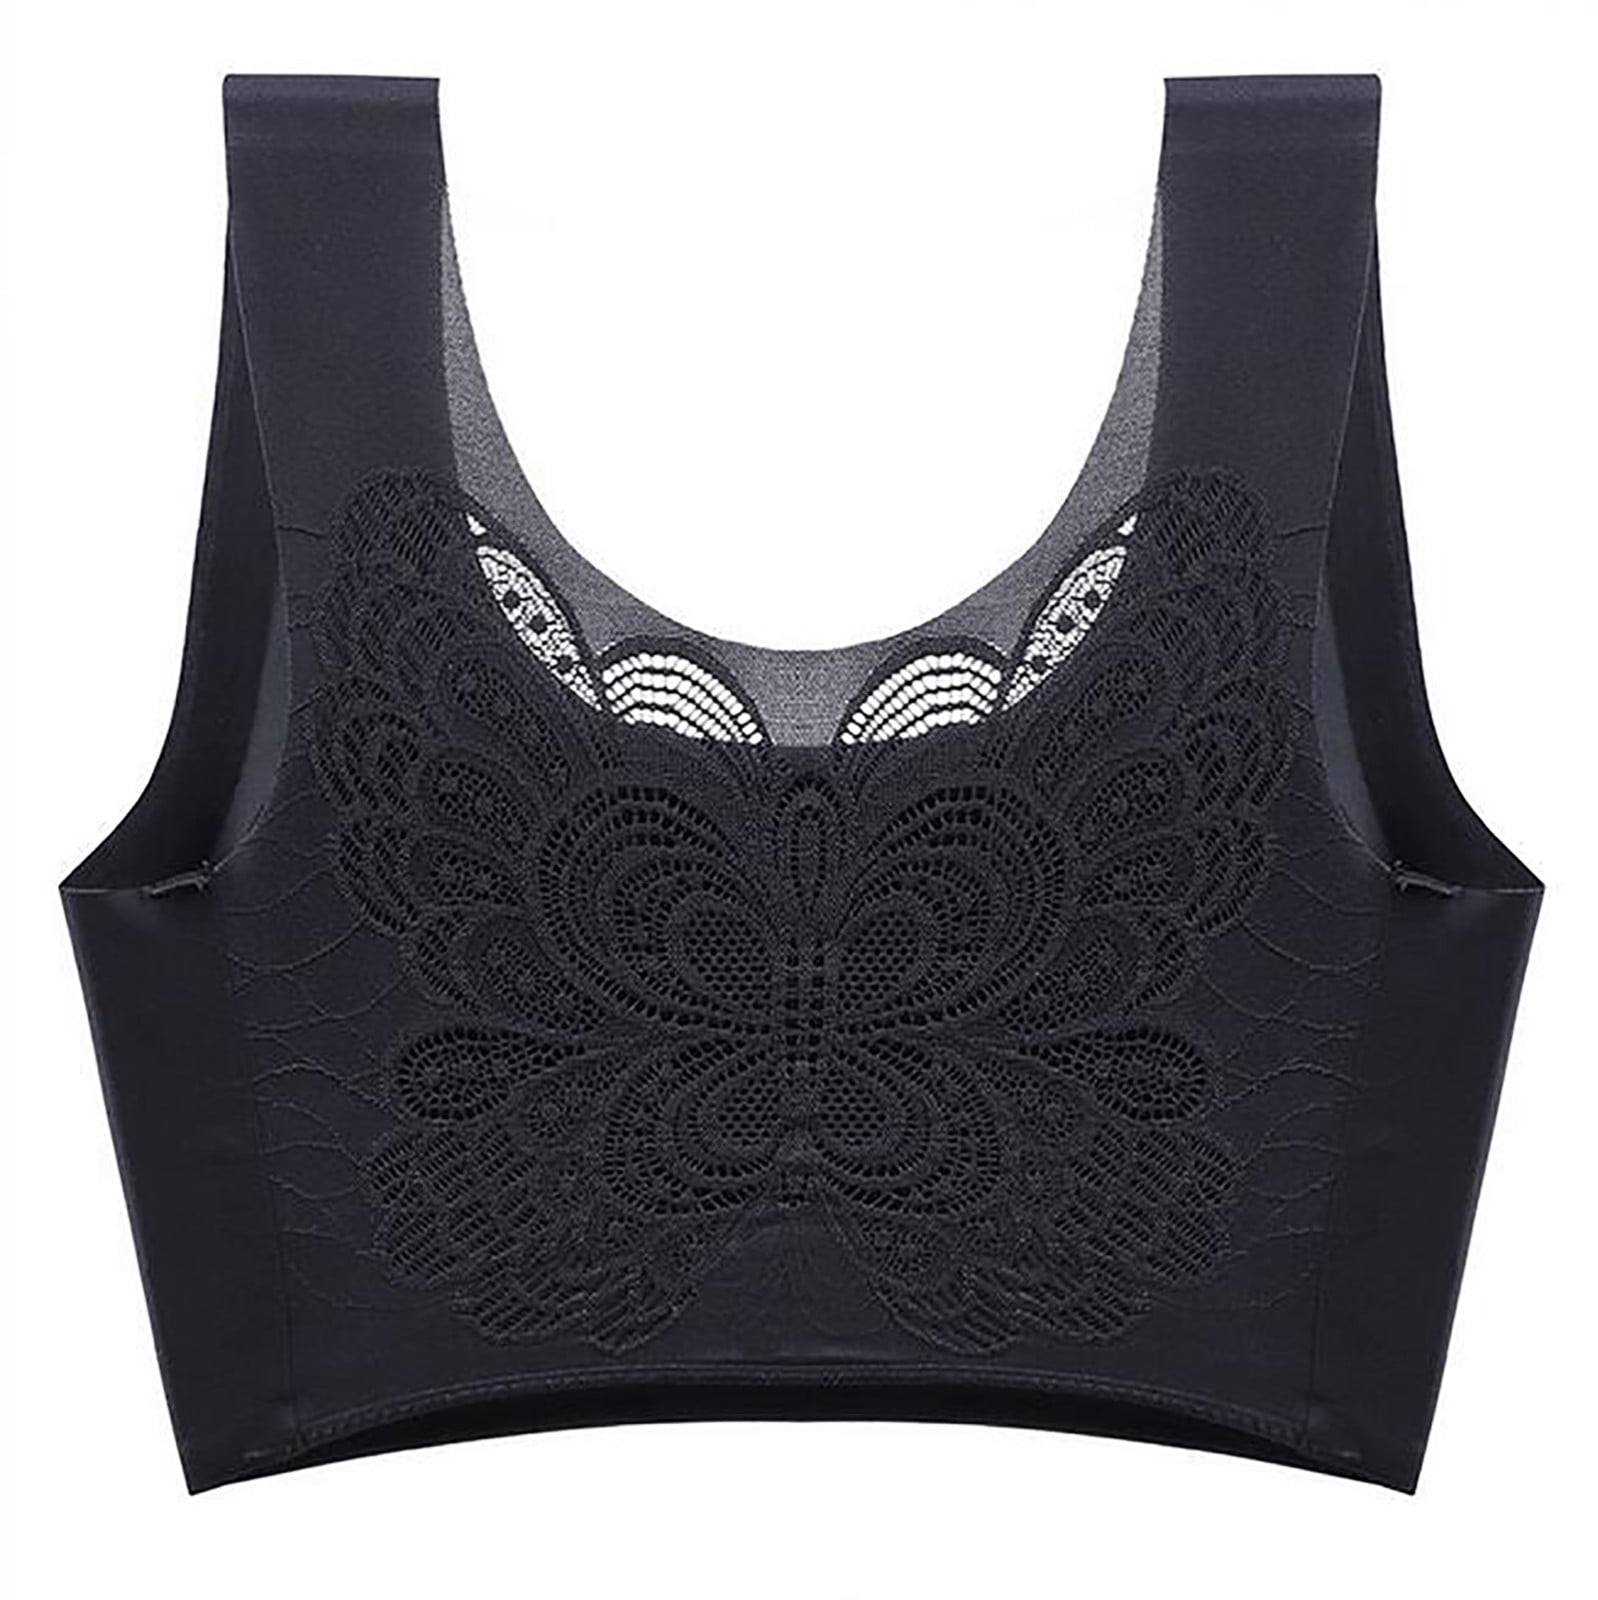 Wozhidaoke Bras for Women Women'S Stretch Plus Size Sports Bra Underwear  Yoga Hollow Out Bra Push Up Bra (Black,3XL) 